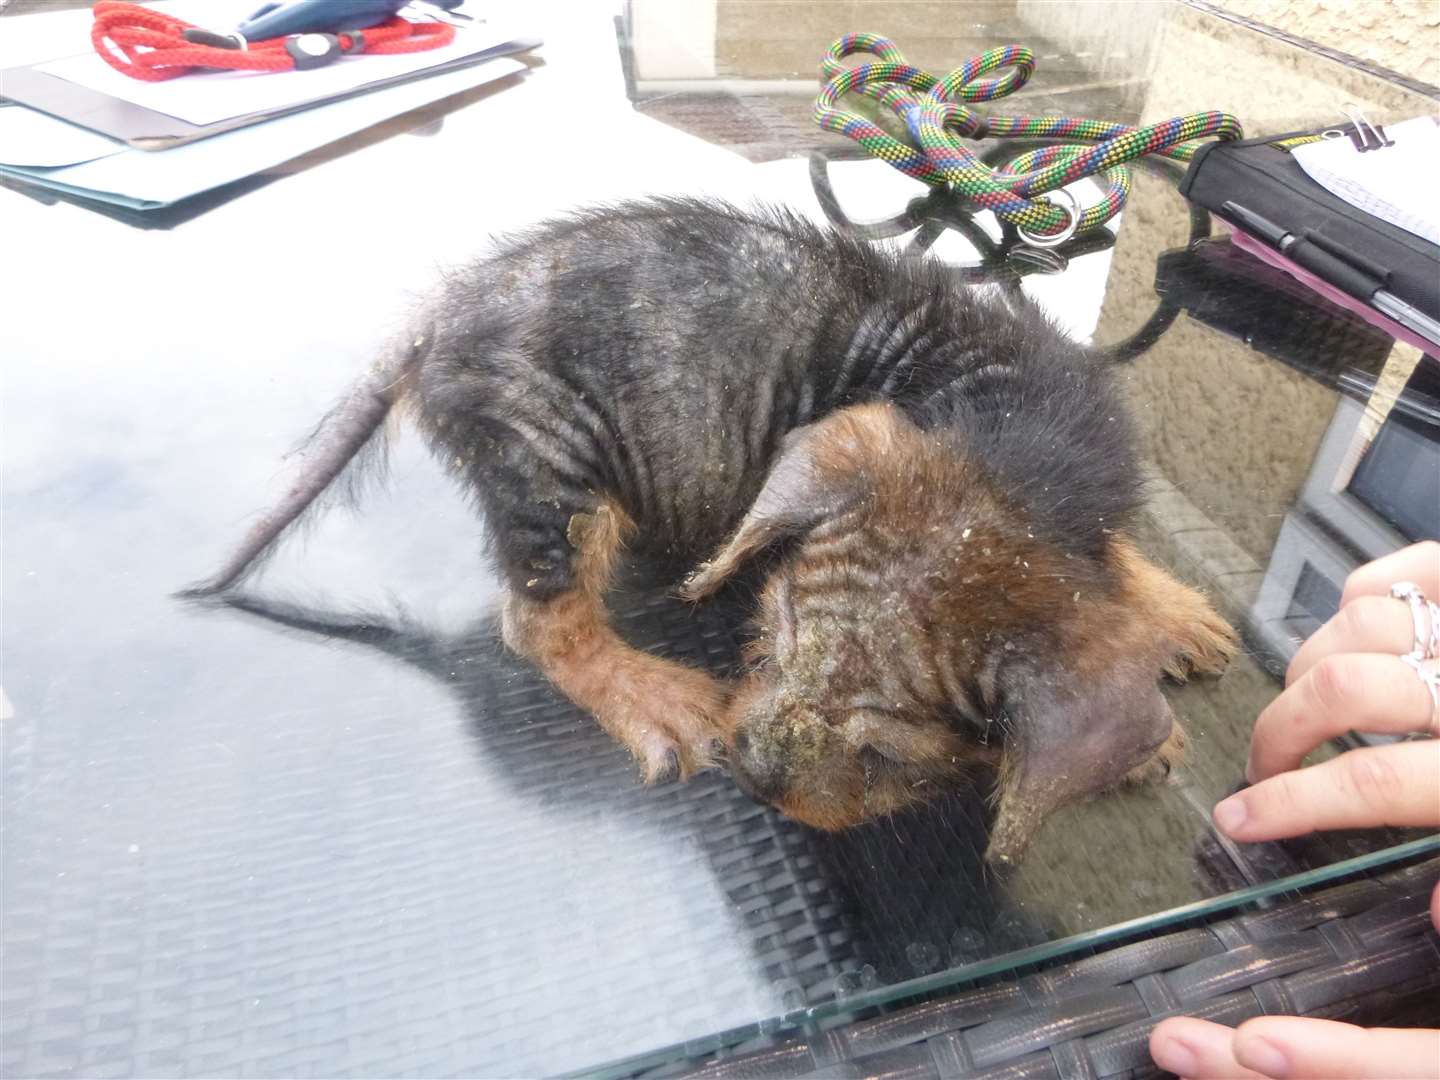 The dachshund puppy when it was found